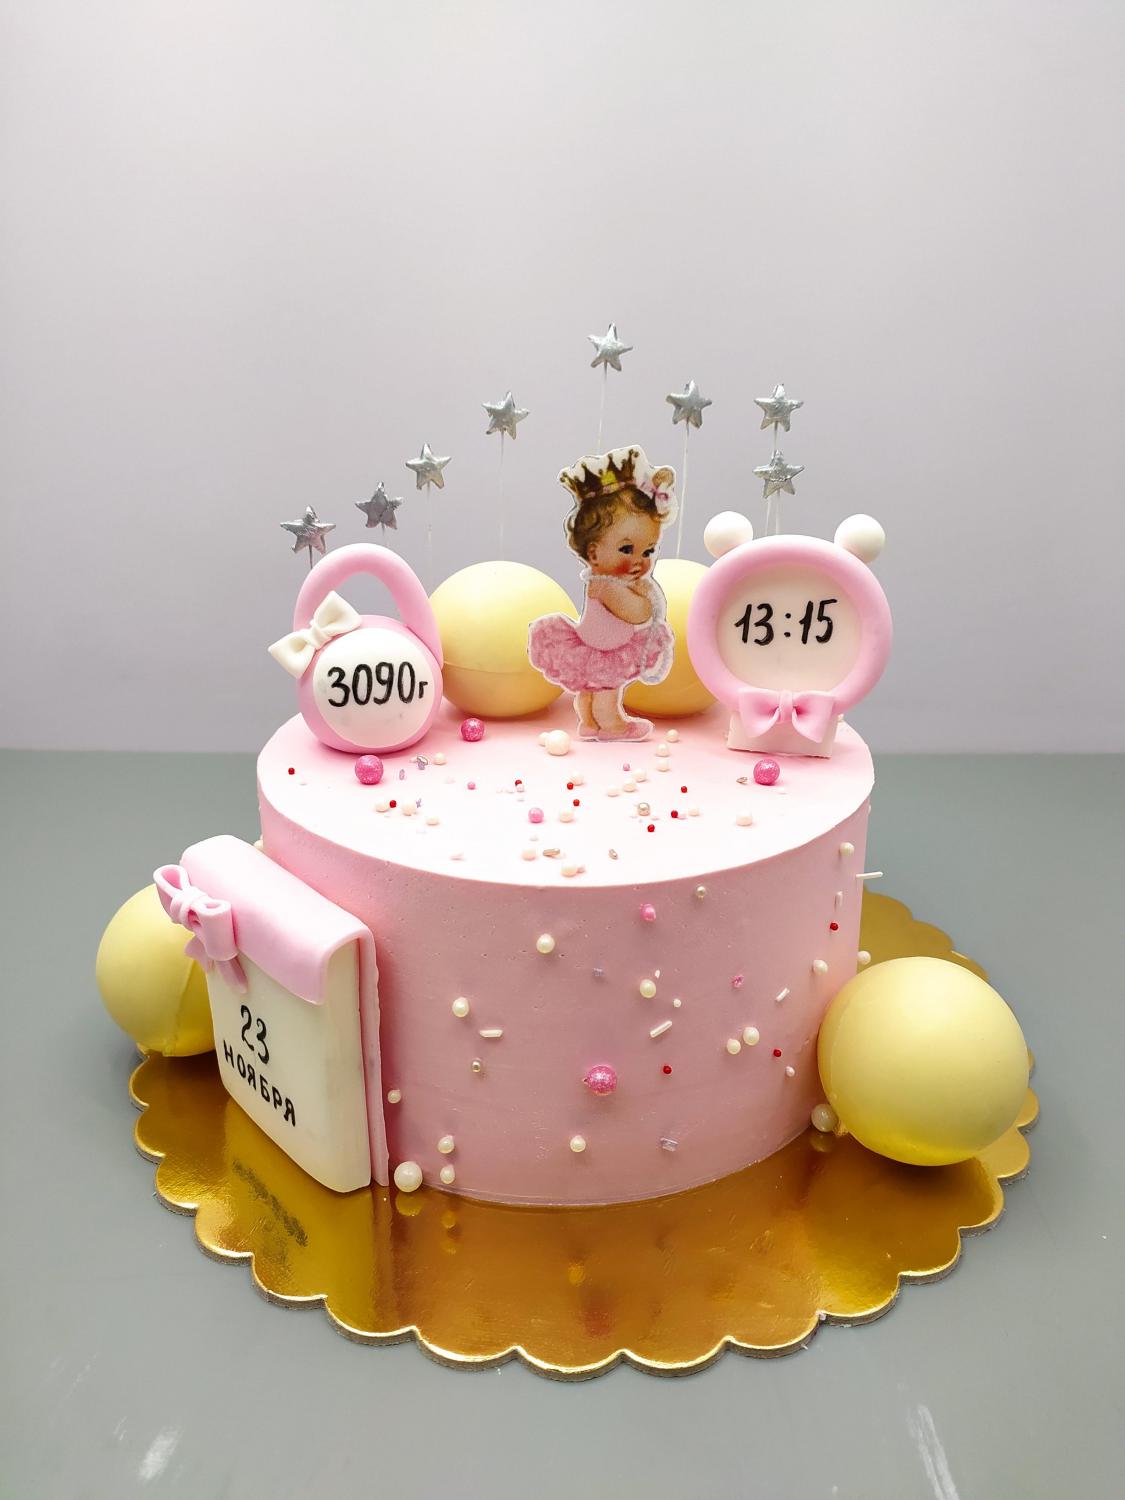 Детский торт Банановый с ананасом #90 в кондитерской cake64.ru фото